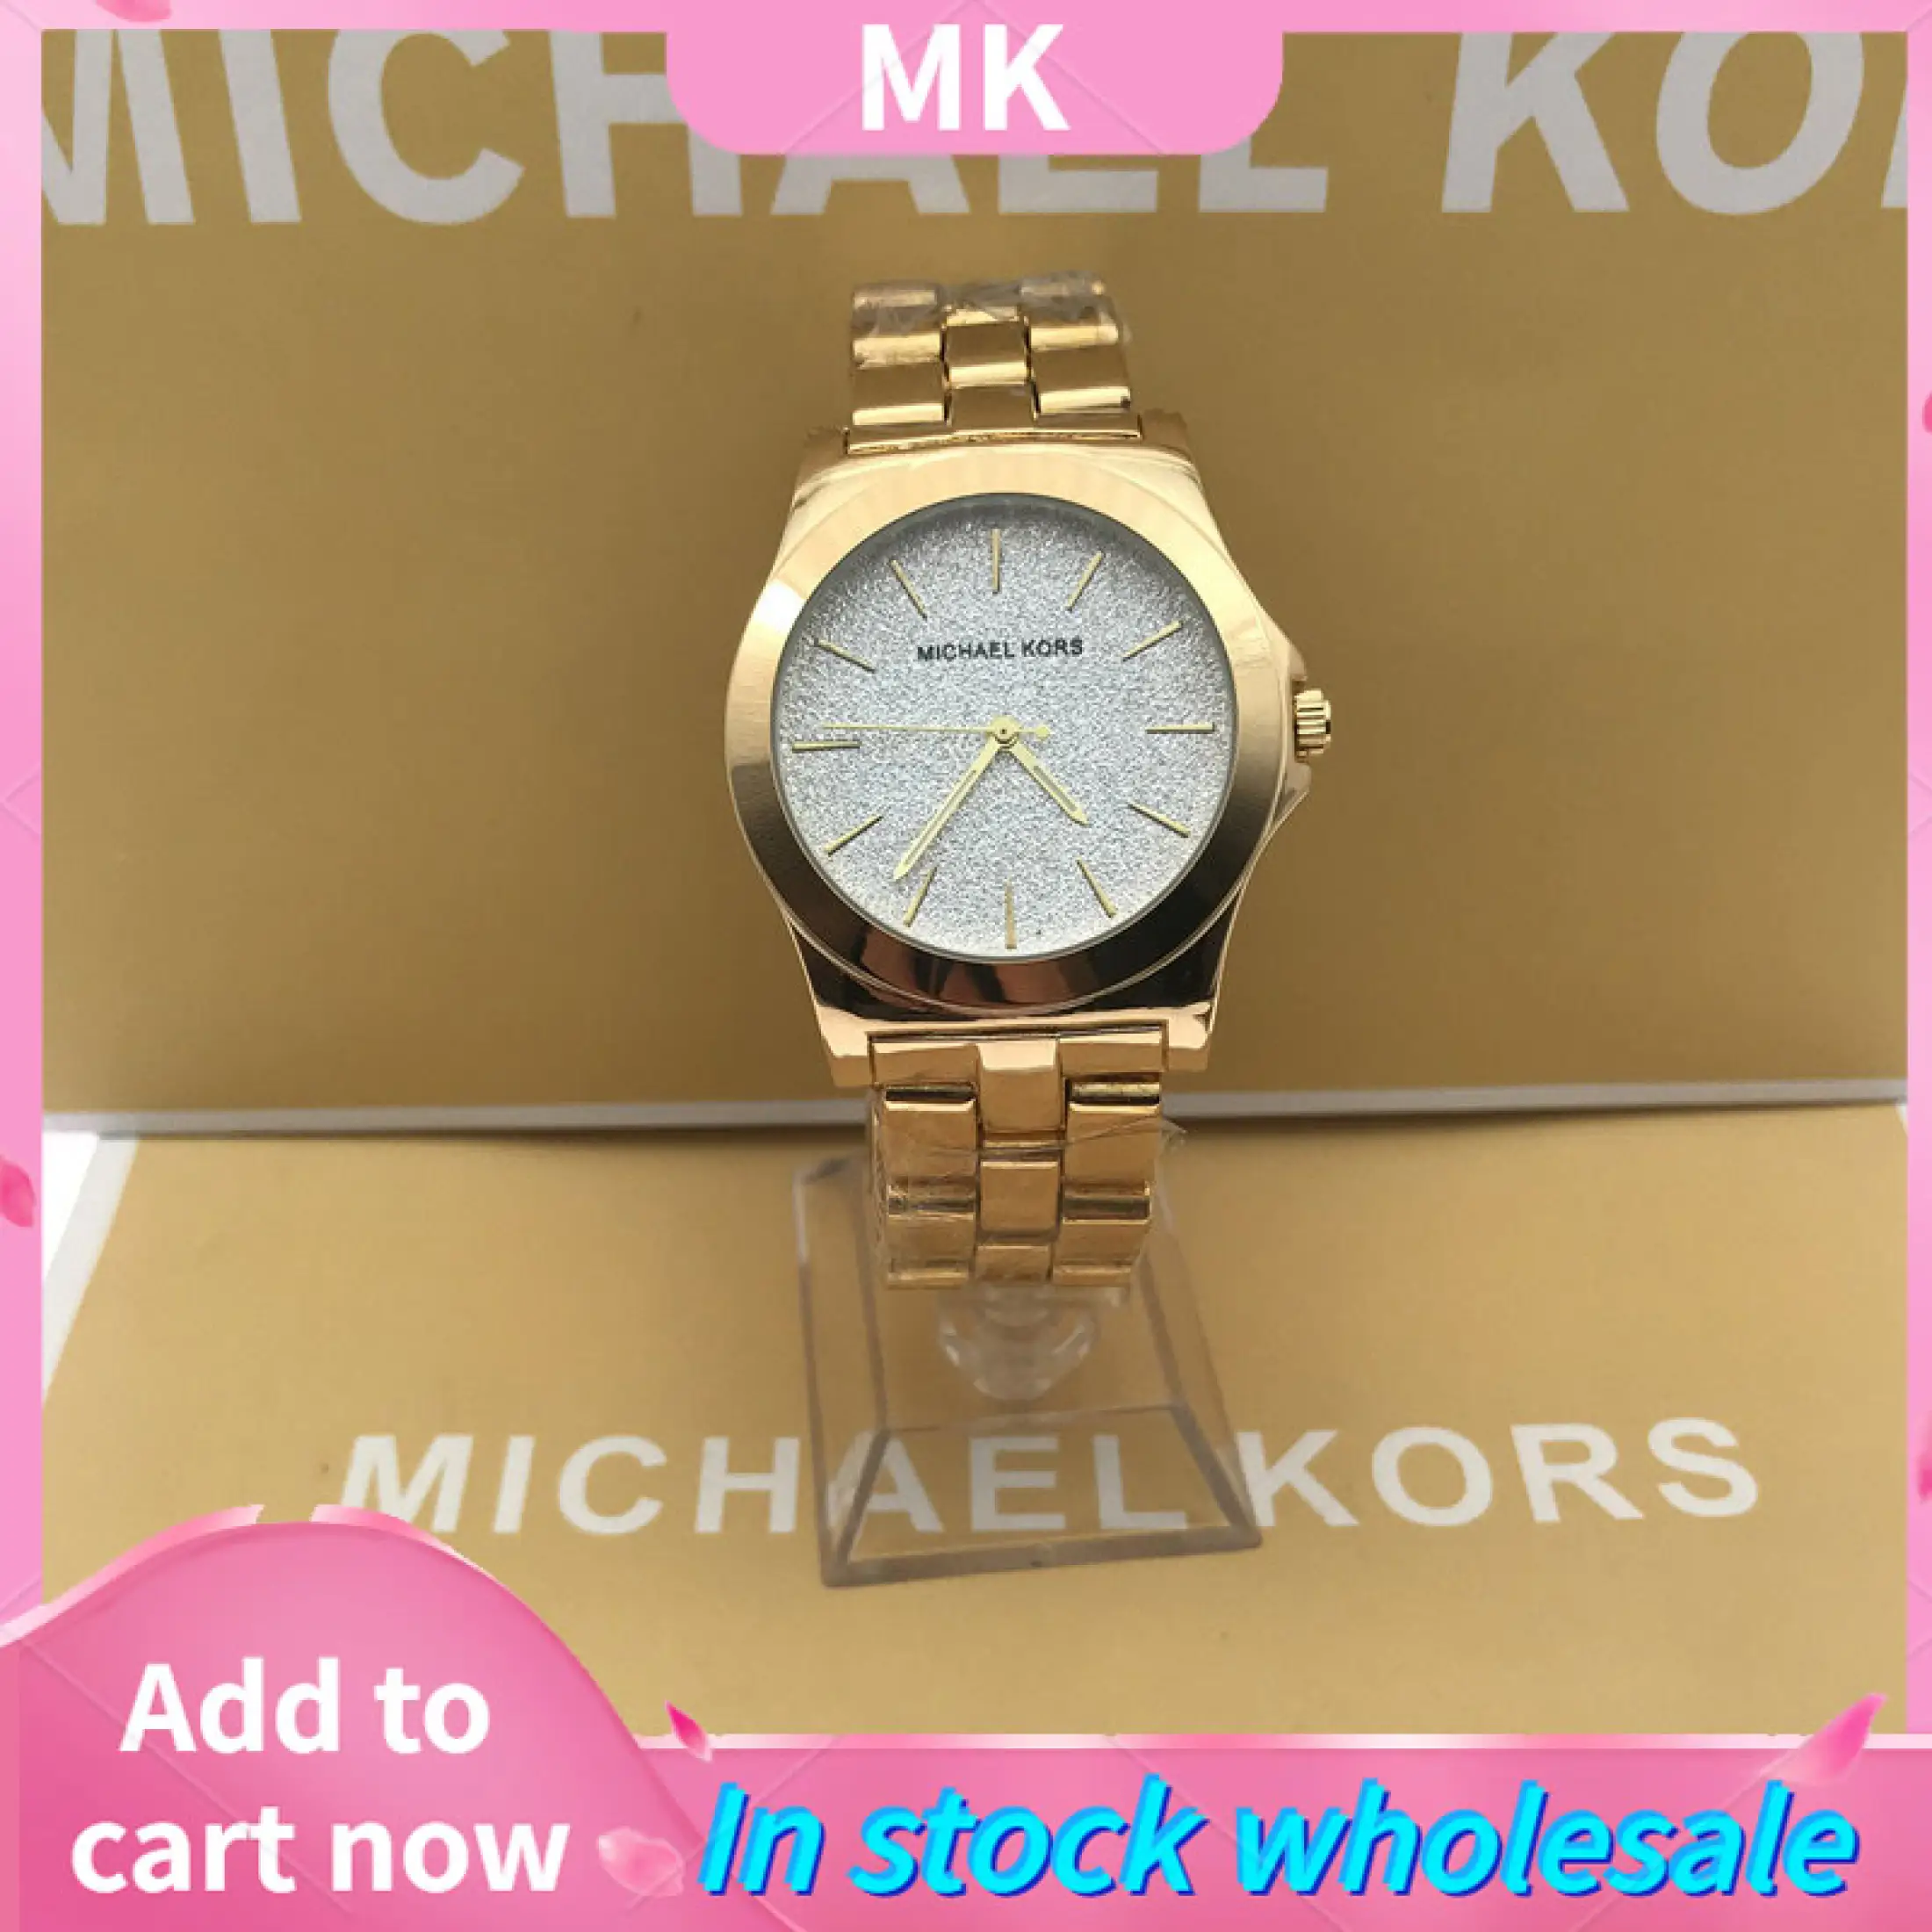 Michael Kors Watch Wholesale Distributors Online  wwwkalyanamalemcom  1690443903